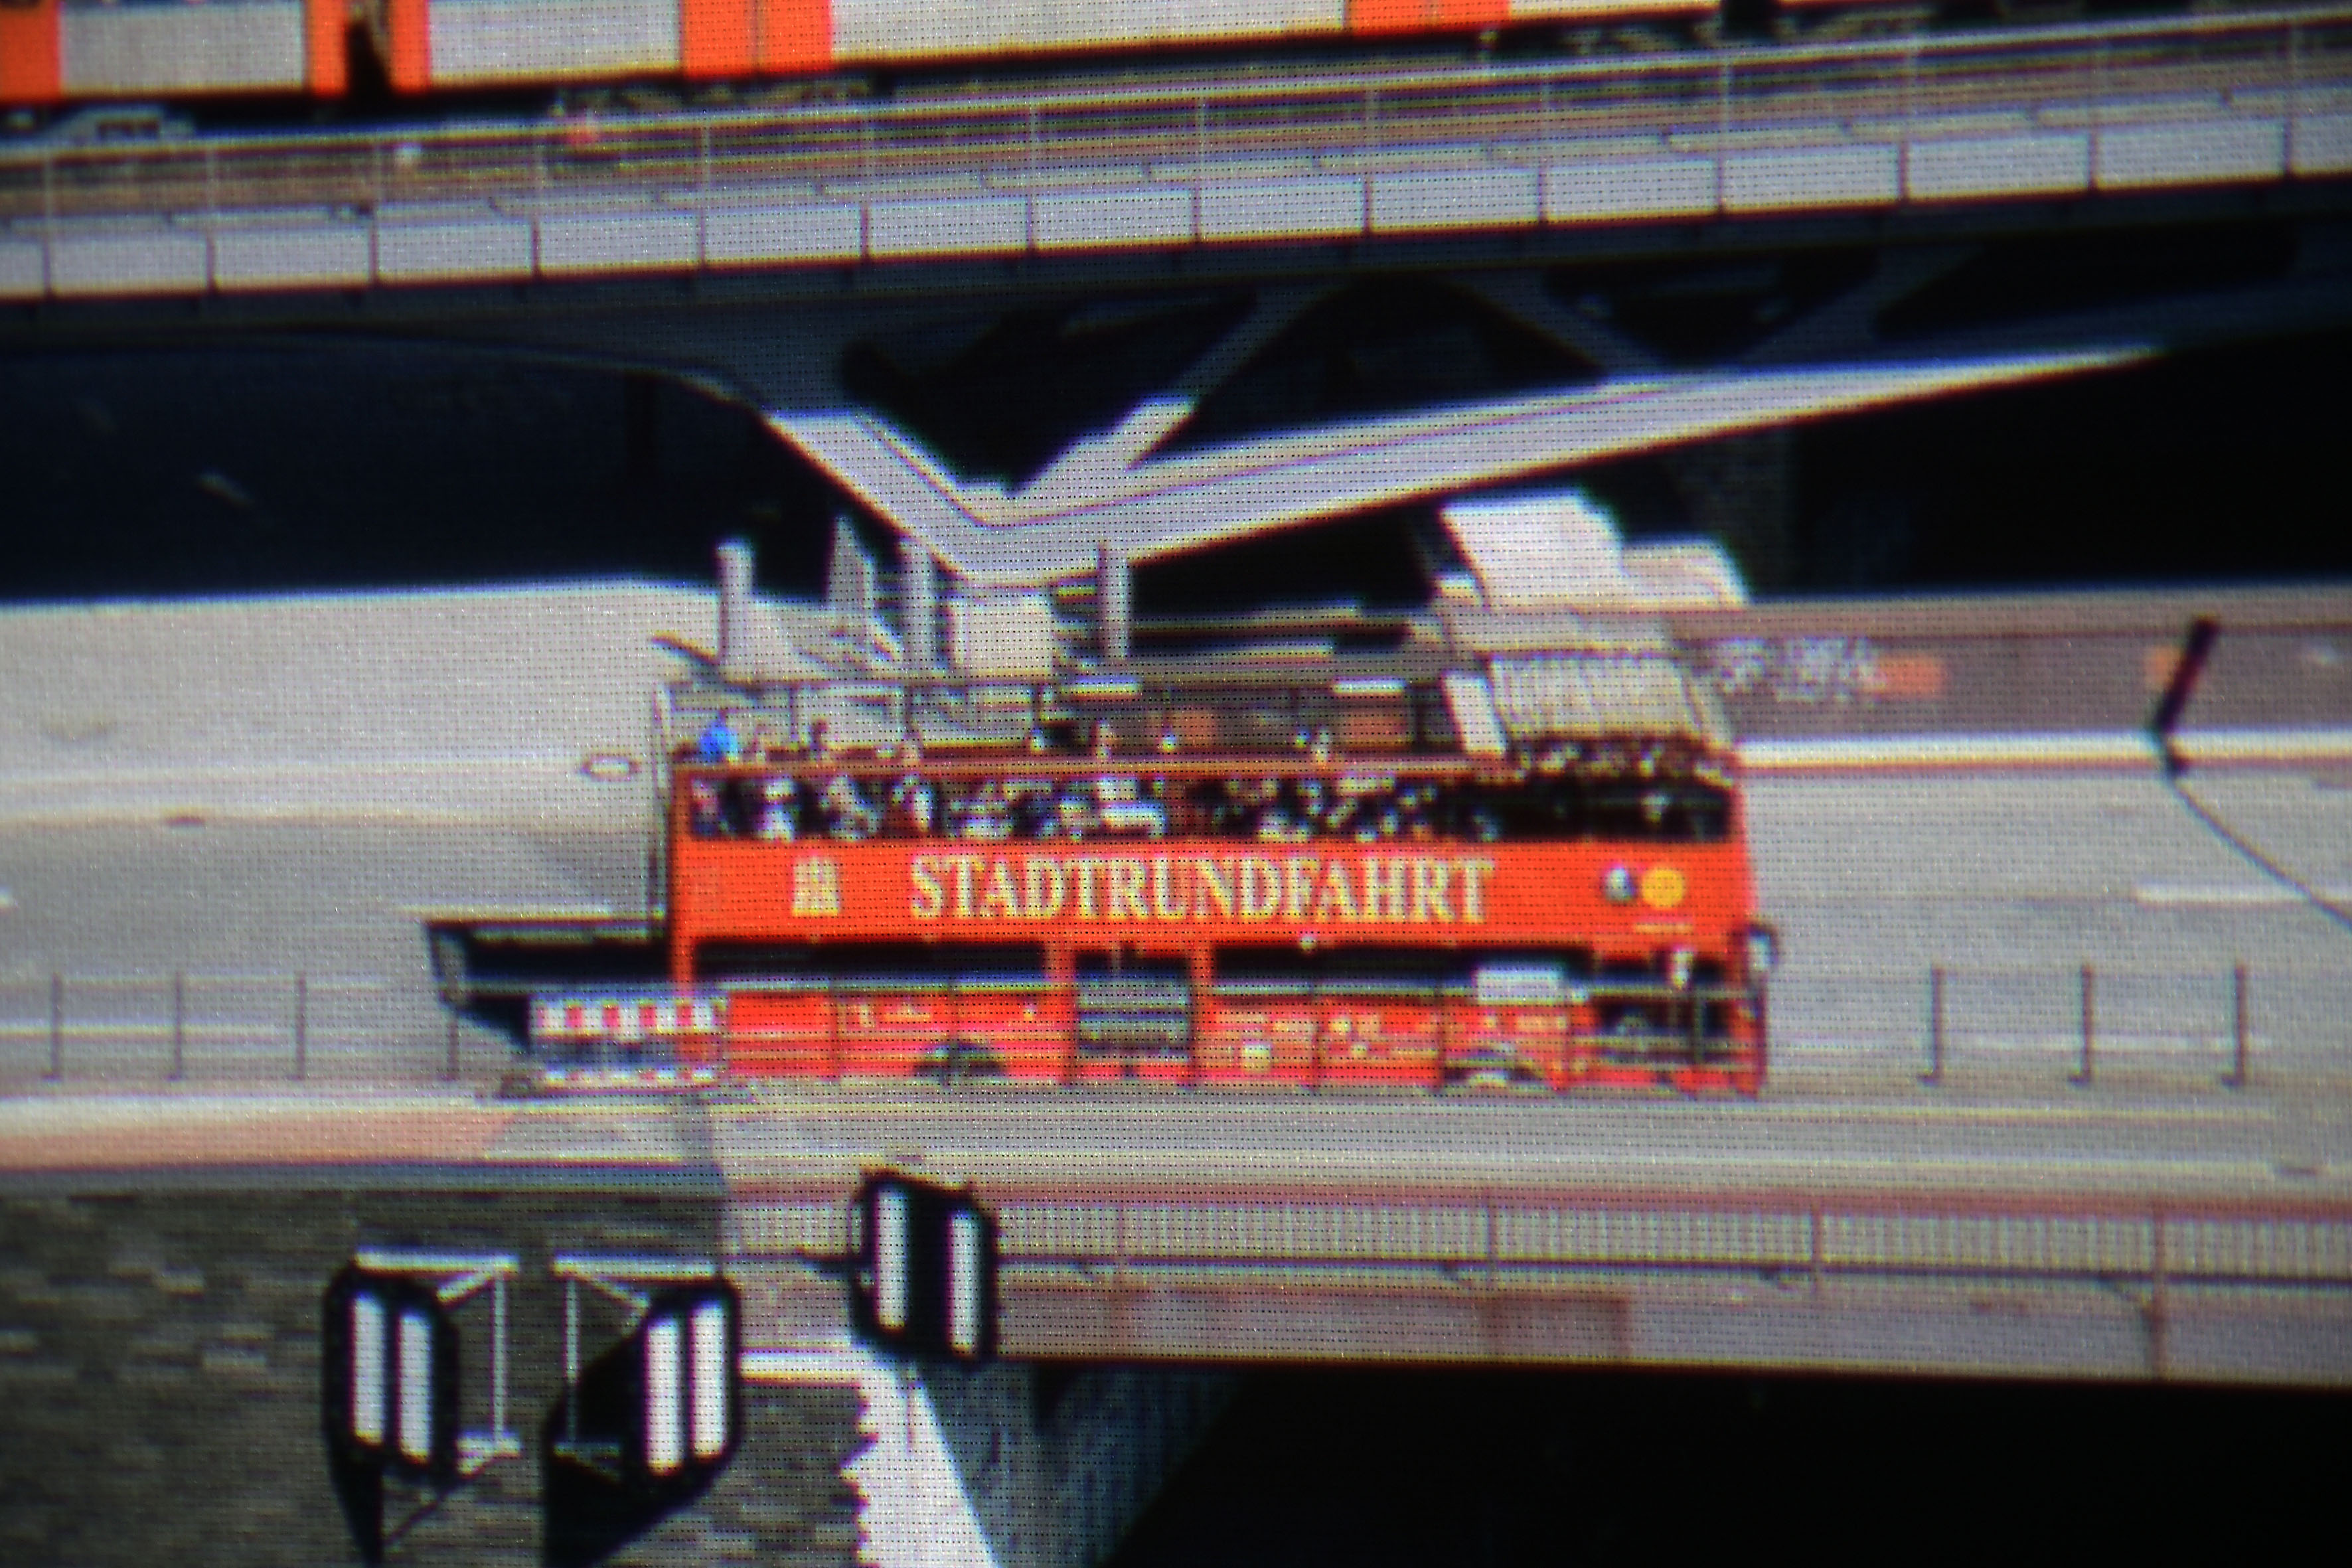 Foto: Michael B. Rehders Hier ein 5 % Ausschnitt aus meiner Panoramaaufnahme. Der graue Asphalt ist völlig farbneutral. Sämtliche Elemente auf dem Doppeldecker sind gut zu sehen. Selbst einzelne Personen werden im Bus klar und deutlich abgebildet.